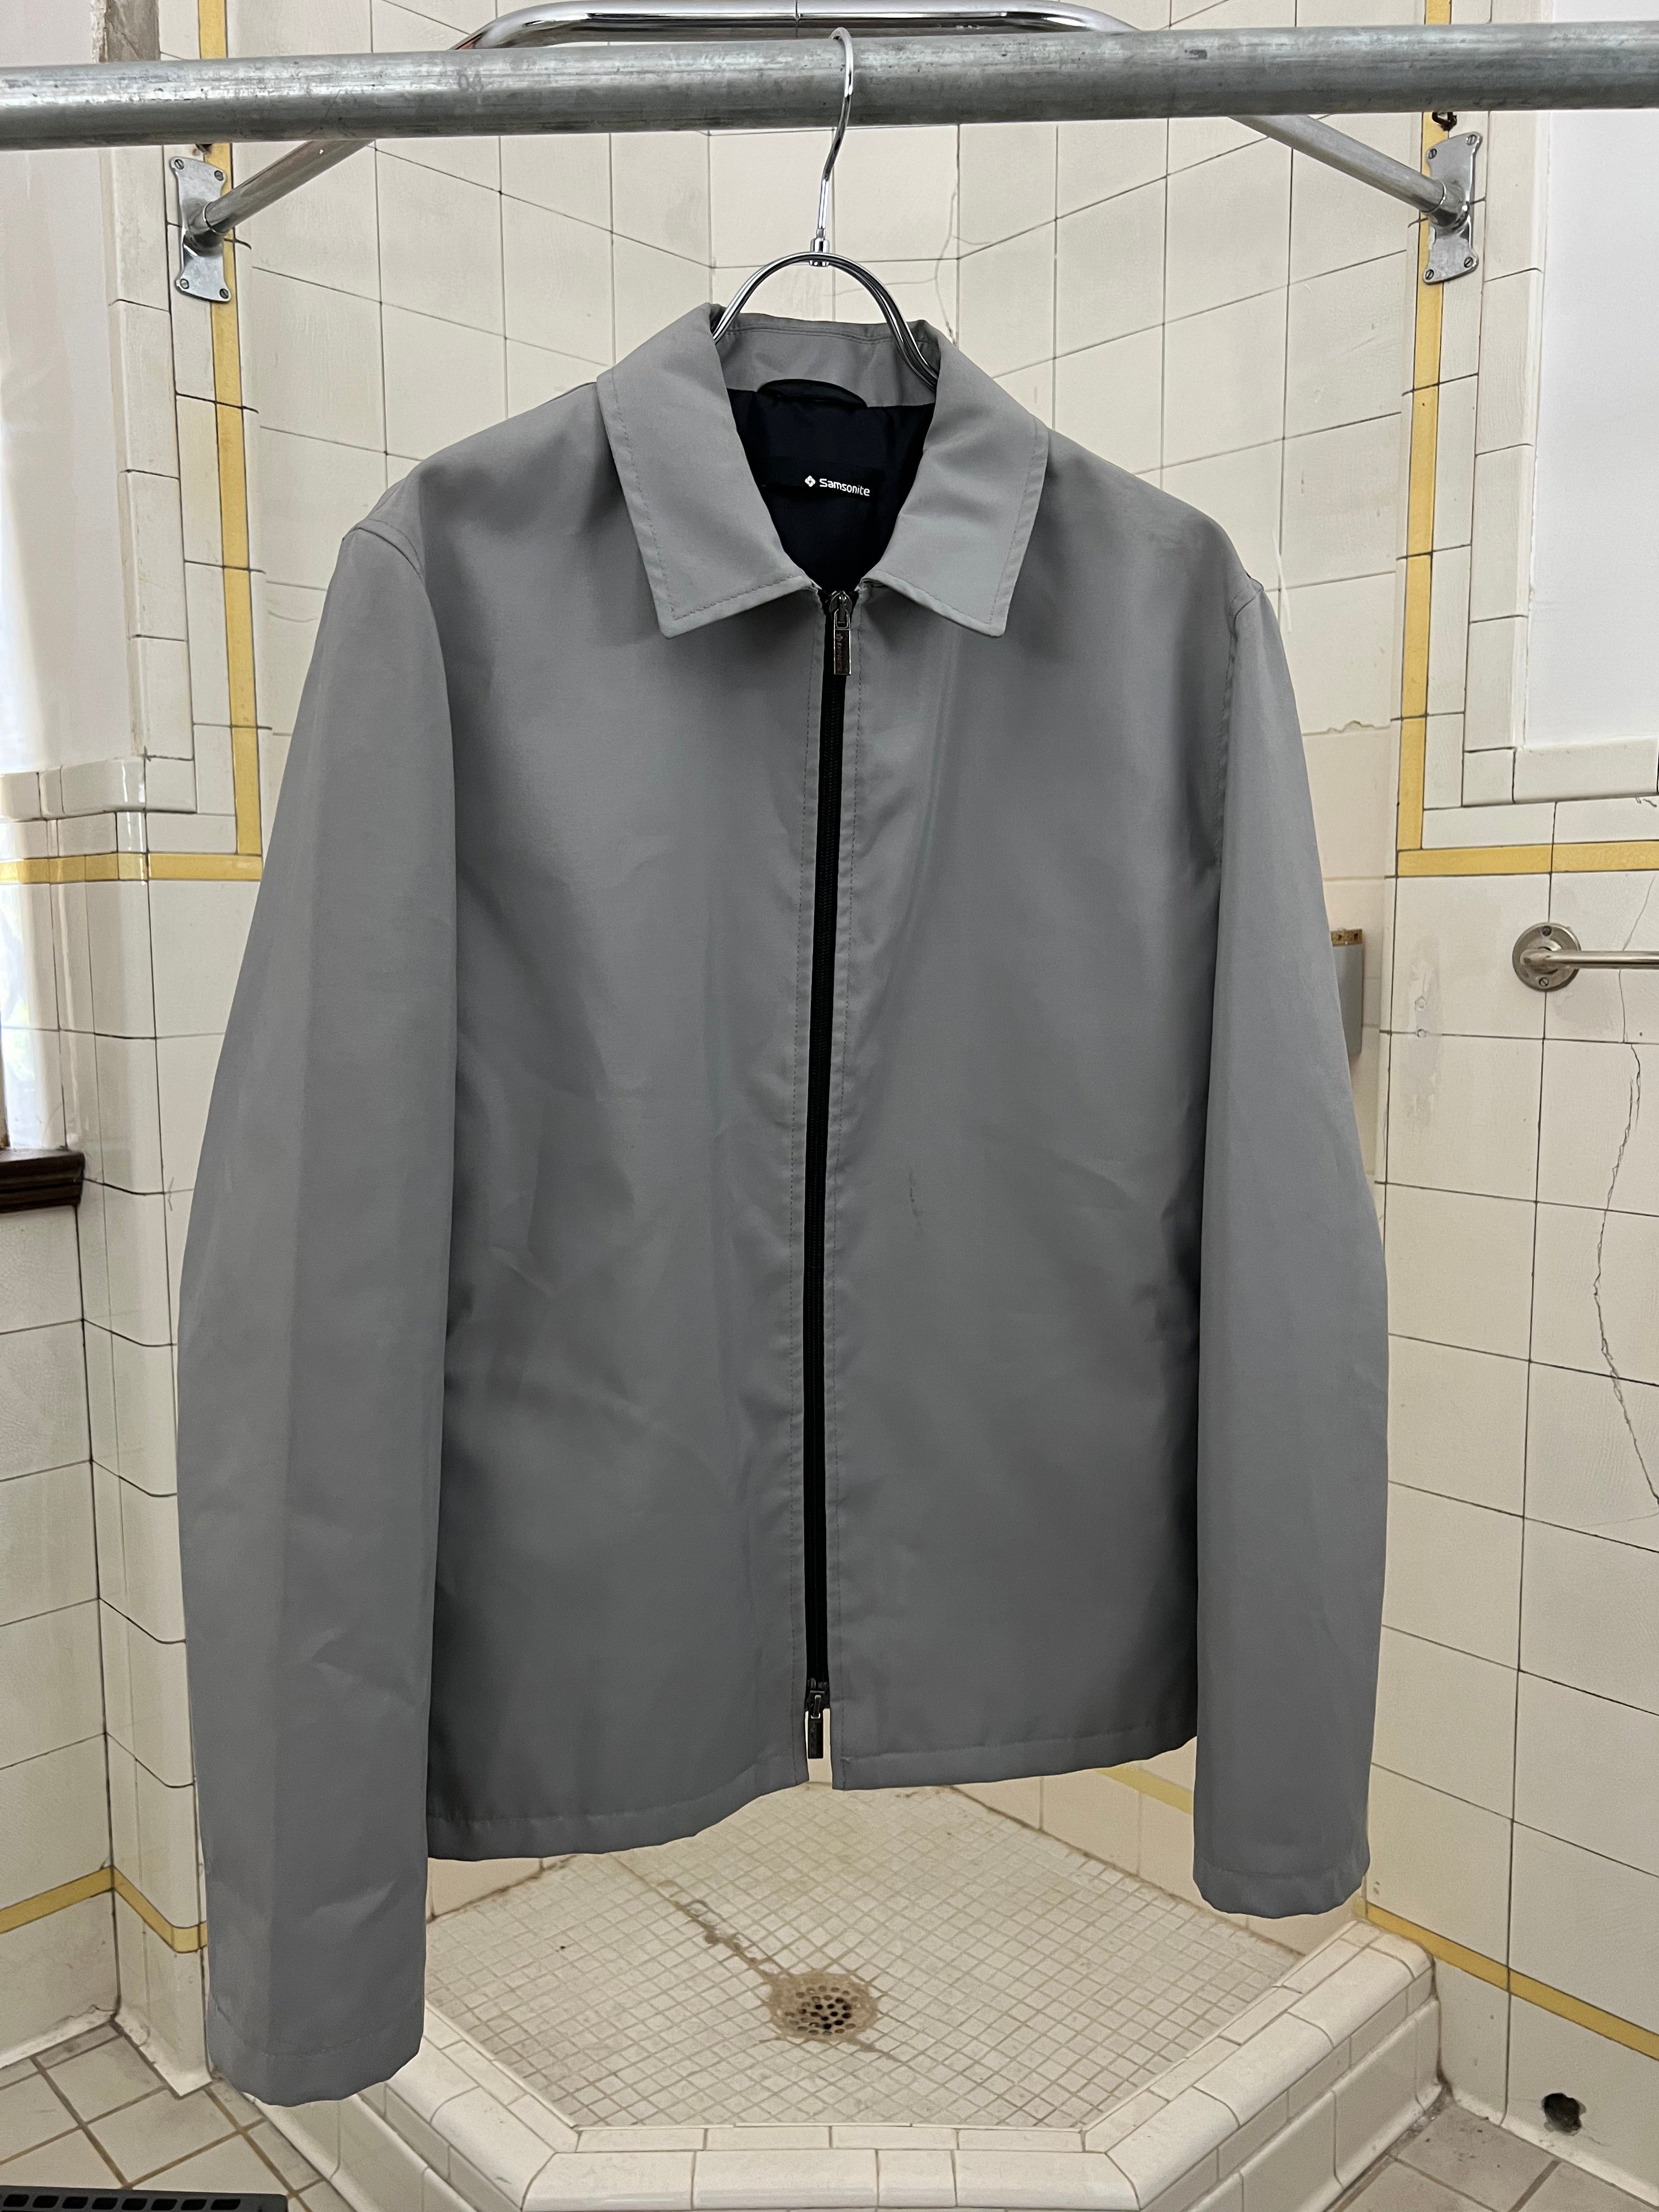 2000s Samsonite ‘Travel Wear’ Grey Work Jacket - Size M